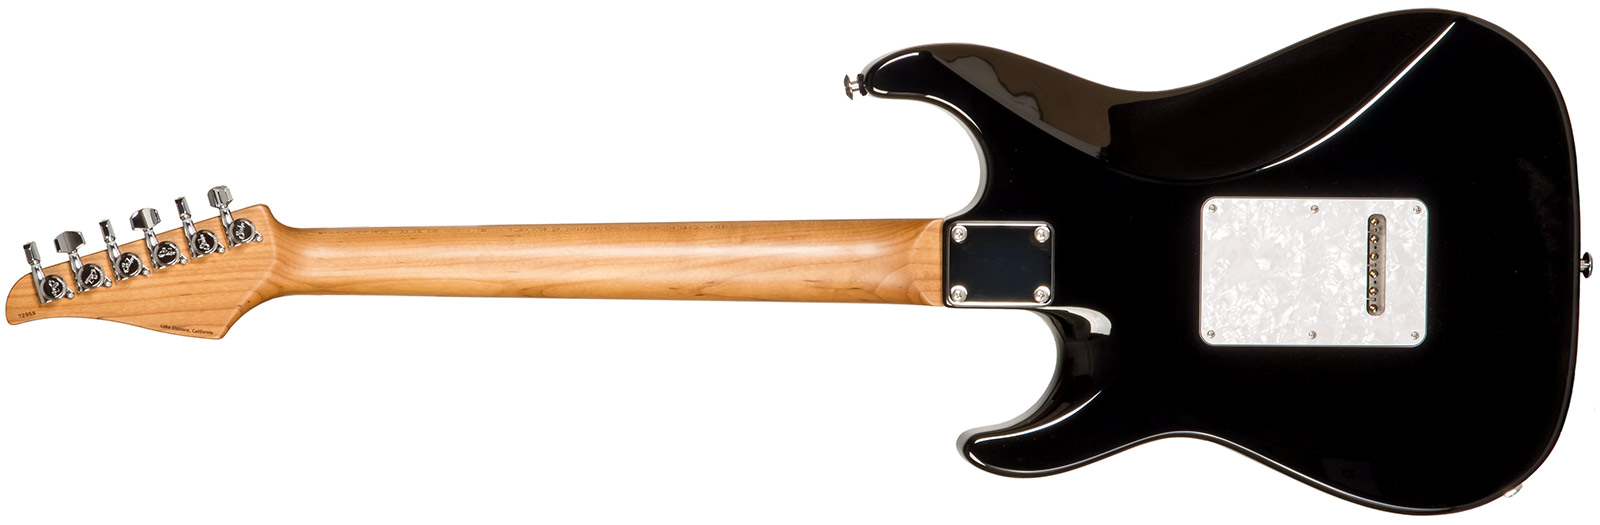 Suhr Standard Plus Usa Hss Trem Pf #72959 - Bengal Burst - E-Gitarre in Str-Form - Variation 1